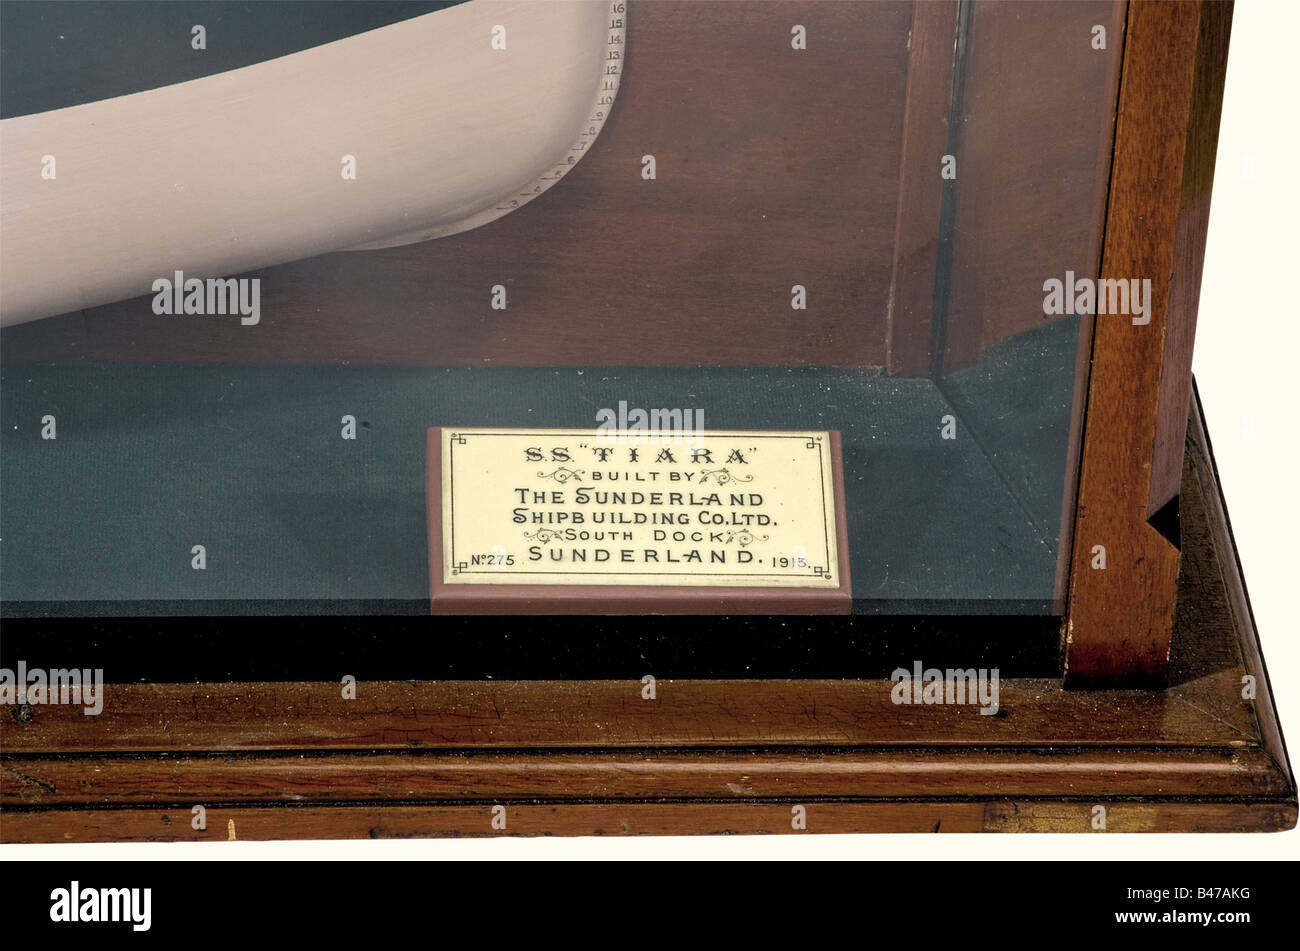 'SS Tiara', ein Halbschiffmodell, das auf 'England 1913' Datiert Ist, Detailliertes Halbmodell eines Frachters, das aus Holz, Metall und Kunststoff gegen eine gespiegelte Rückwand besteht. In einem Glasgehäuse mit Holzrahmen. Es gibt eine Platte in dem Fall, Reading, 'SS Tiara Built by the Sunderland Shipb Building Co. Ltd. Nr. 275 Sunderland 1913'. Trägerplatte mit kleinen fehlenden Bereichen. Länge des Schiffsmodells Ca. 170 cm. Glasgehäuse, Abmessungen 208 x 42 x 20 cm. Sehr dekoratives Stück: Historisch, historisch, 1910er, 20. Jahrhundert, Transport, Transport, Objekt, Objekte, Fotos, Miniaturen, Miniatur, Stockfoto